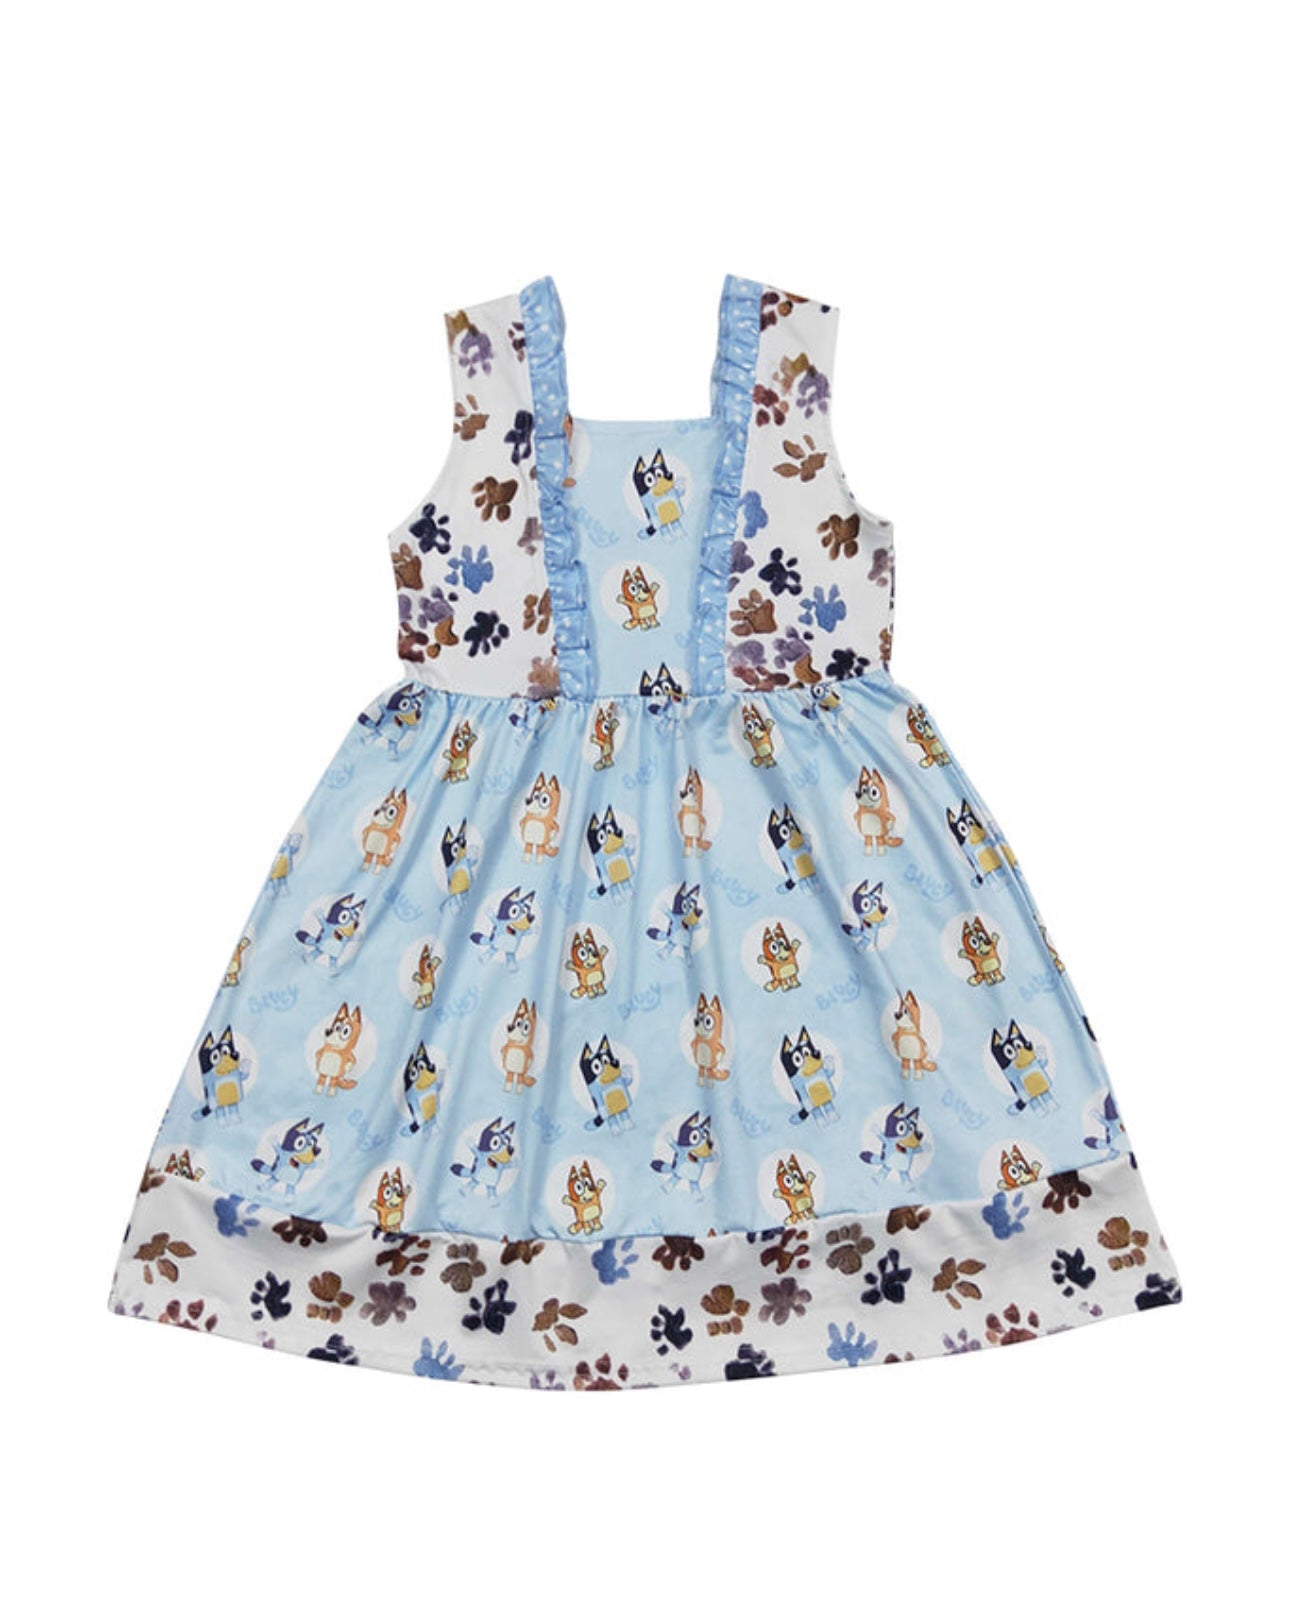 Bluey Ruffle Print Dress